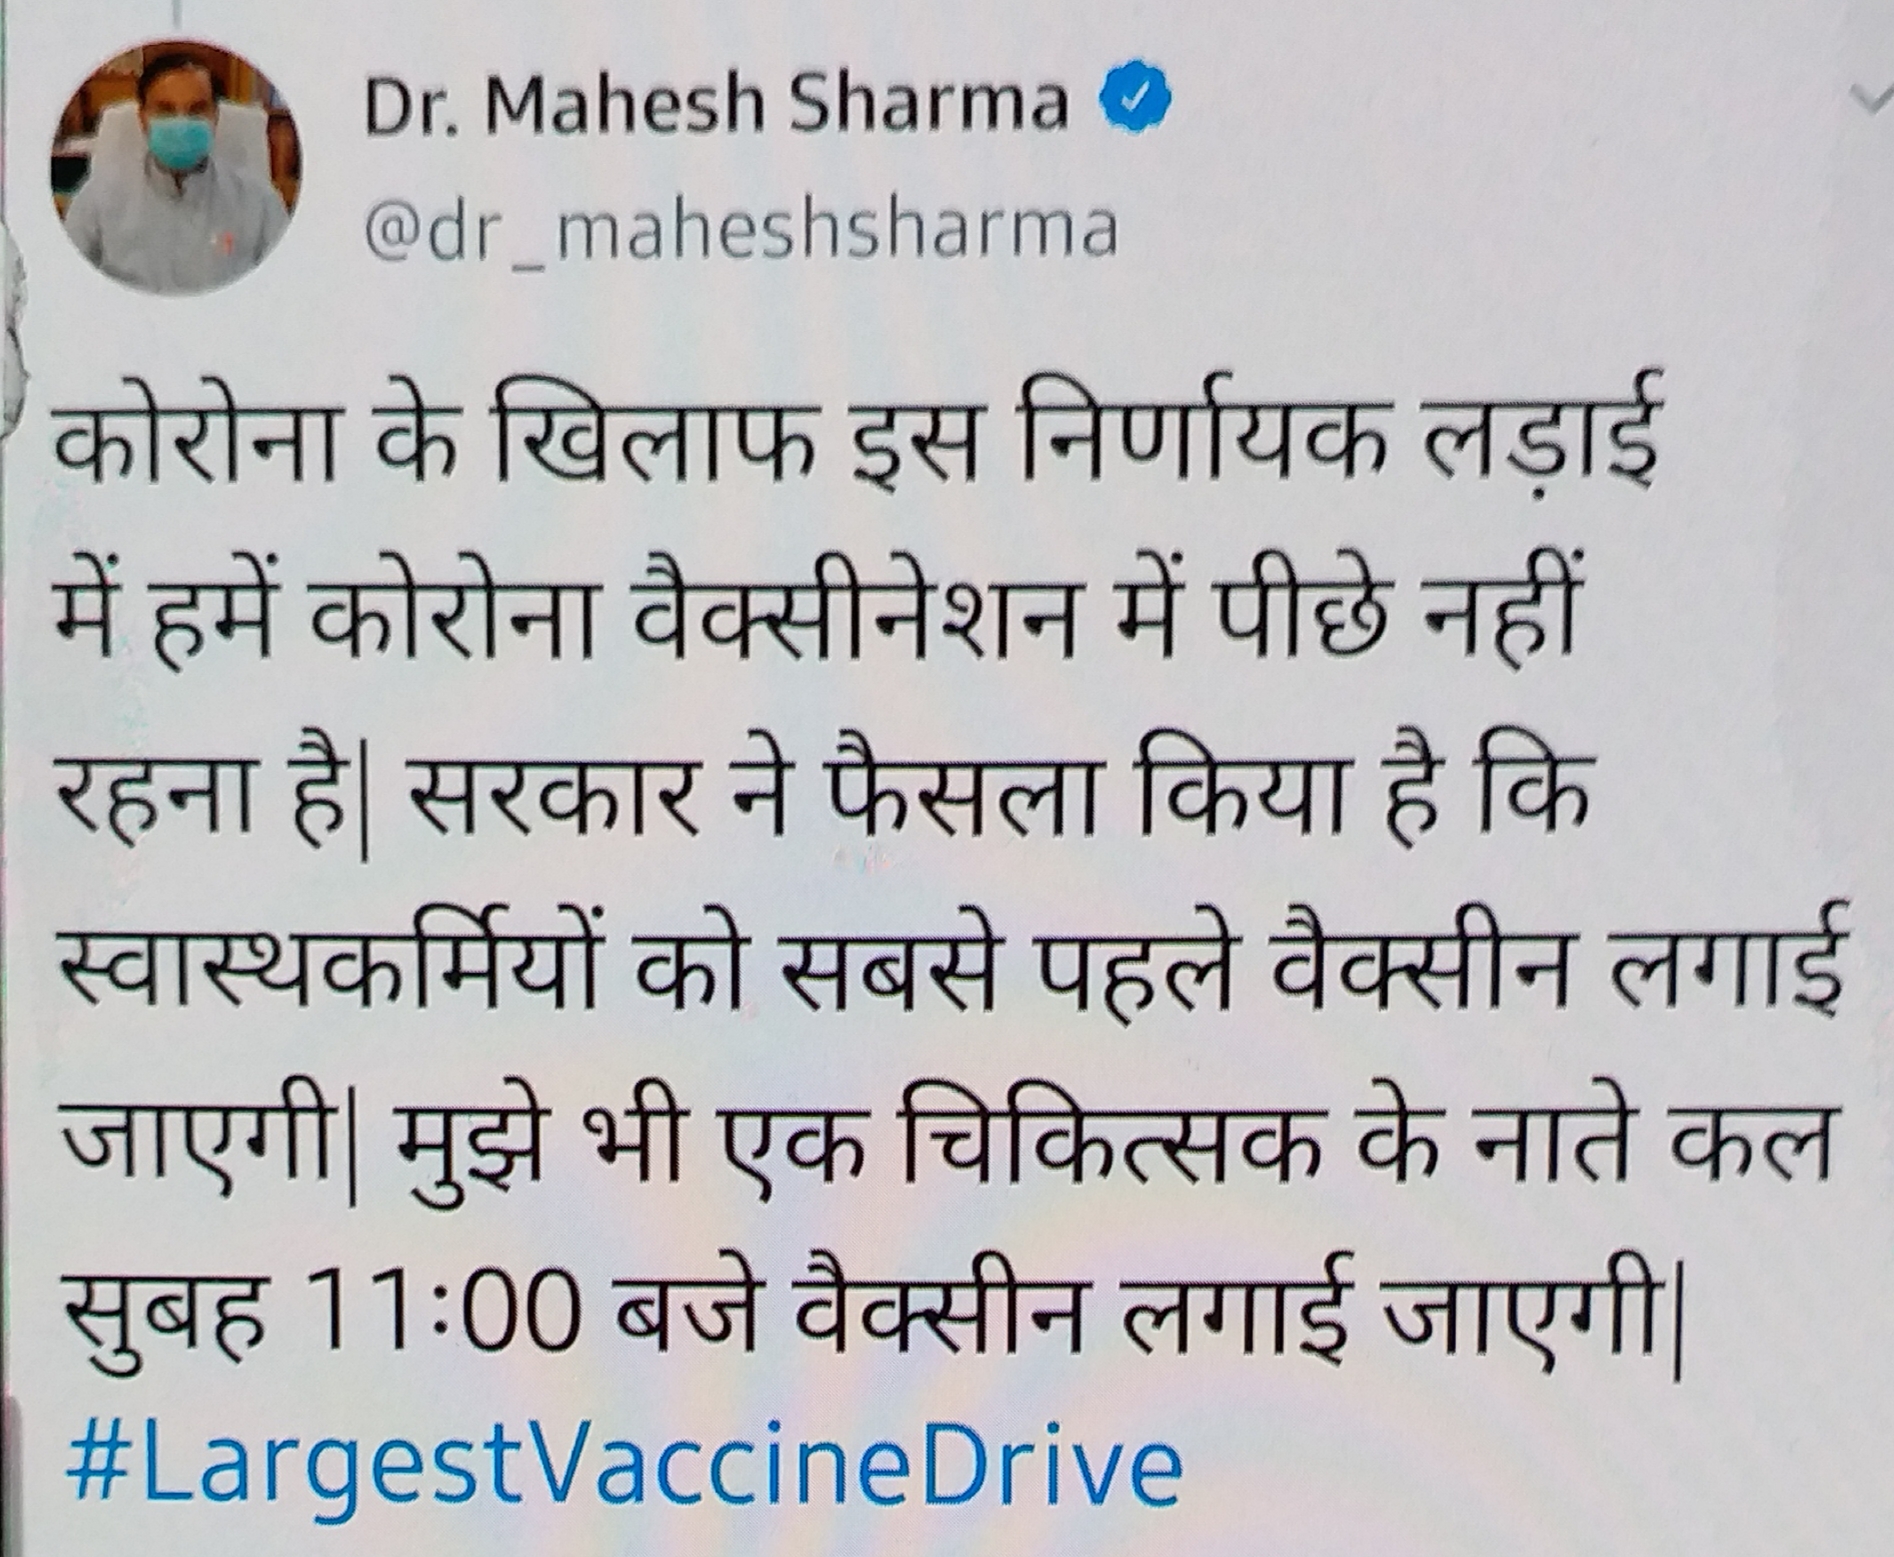 नोएडा MP डॉक्टर महेश शर्मा लगवाएंगे कोरोना वैक्सीन